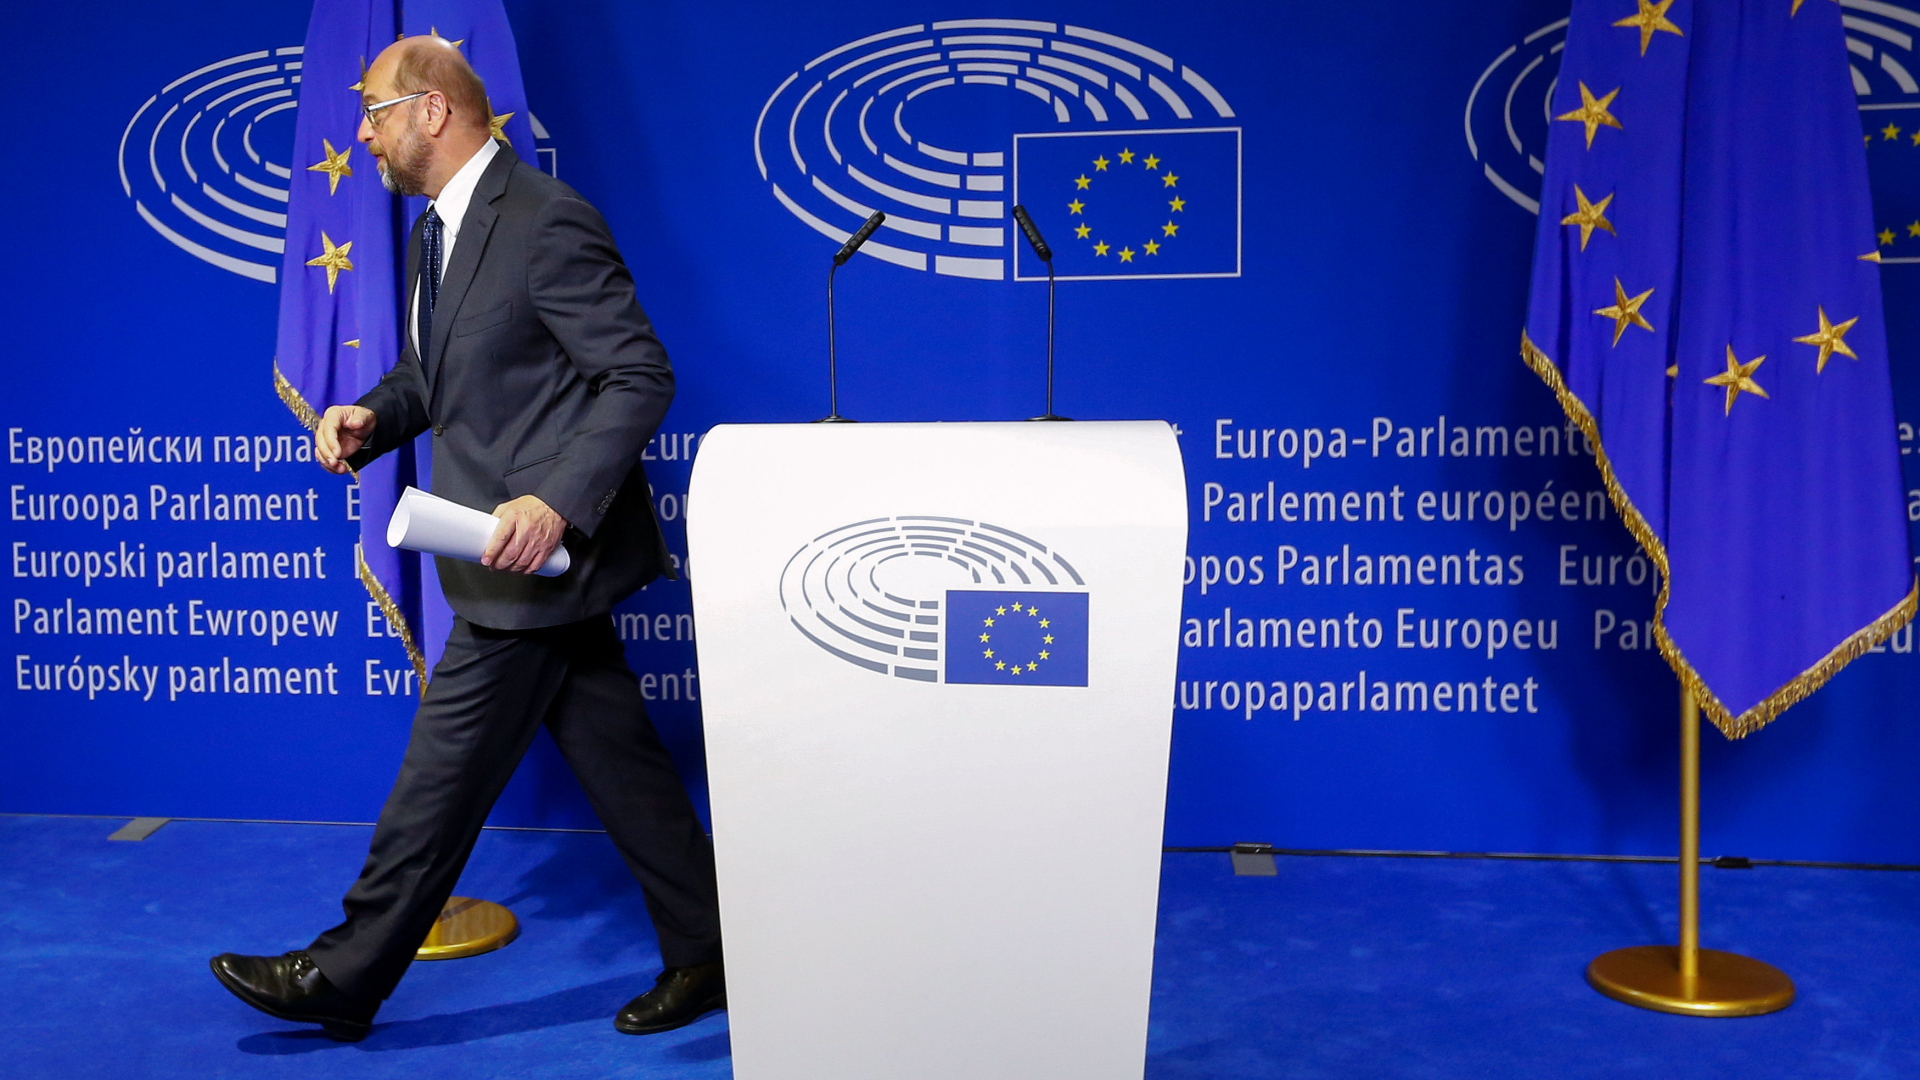 Der Europäische Parlamentspräsident Schulz verlässt eine Pressekonferenz in Brüssel.